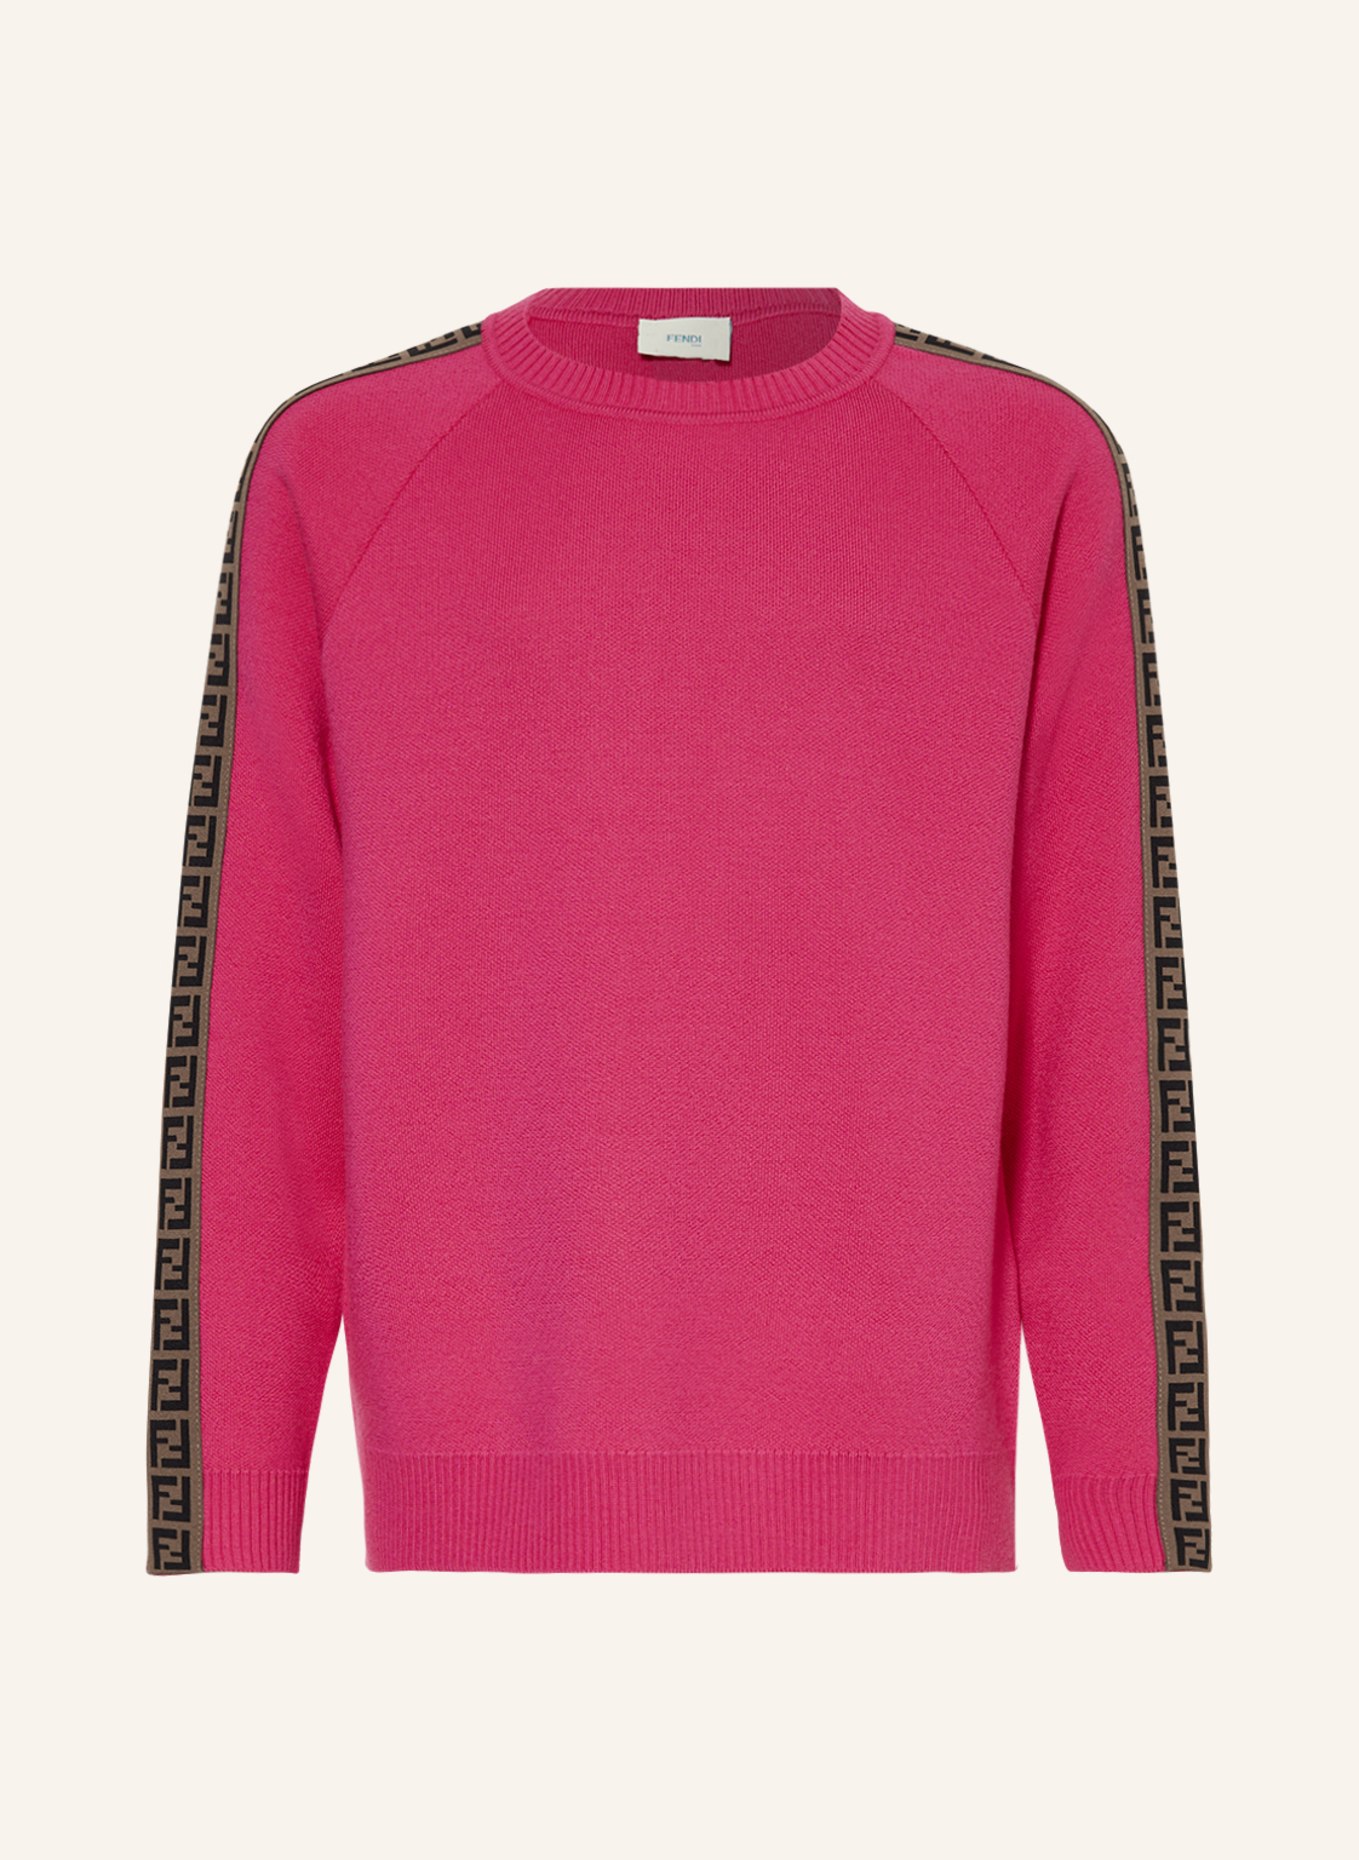 FENDI Pullover, Farbe: PINK (Bild 1)